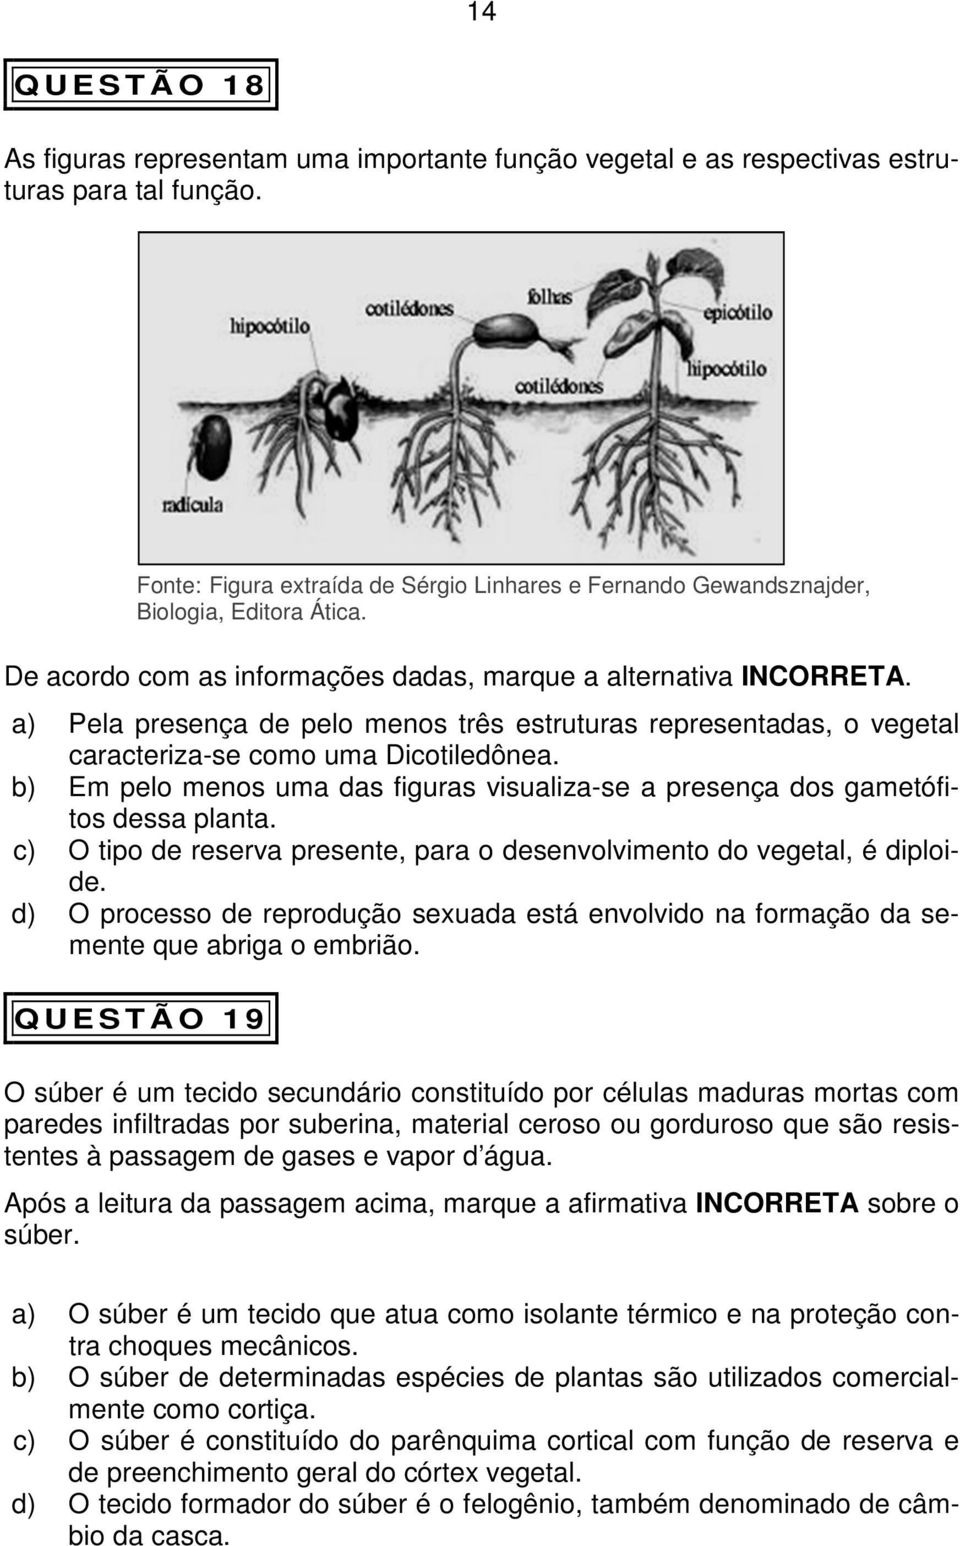 a) Pela presença de pelo menos três estruturas representadas, o vegetal caracteriza-se como uma Dicotiledônea. b) Em pelo menos uma das figuras visualiza-se a presença dos gametófitos dessa planta.